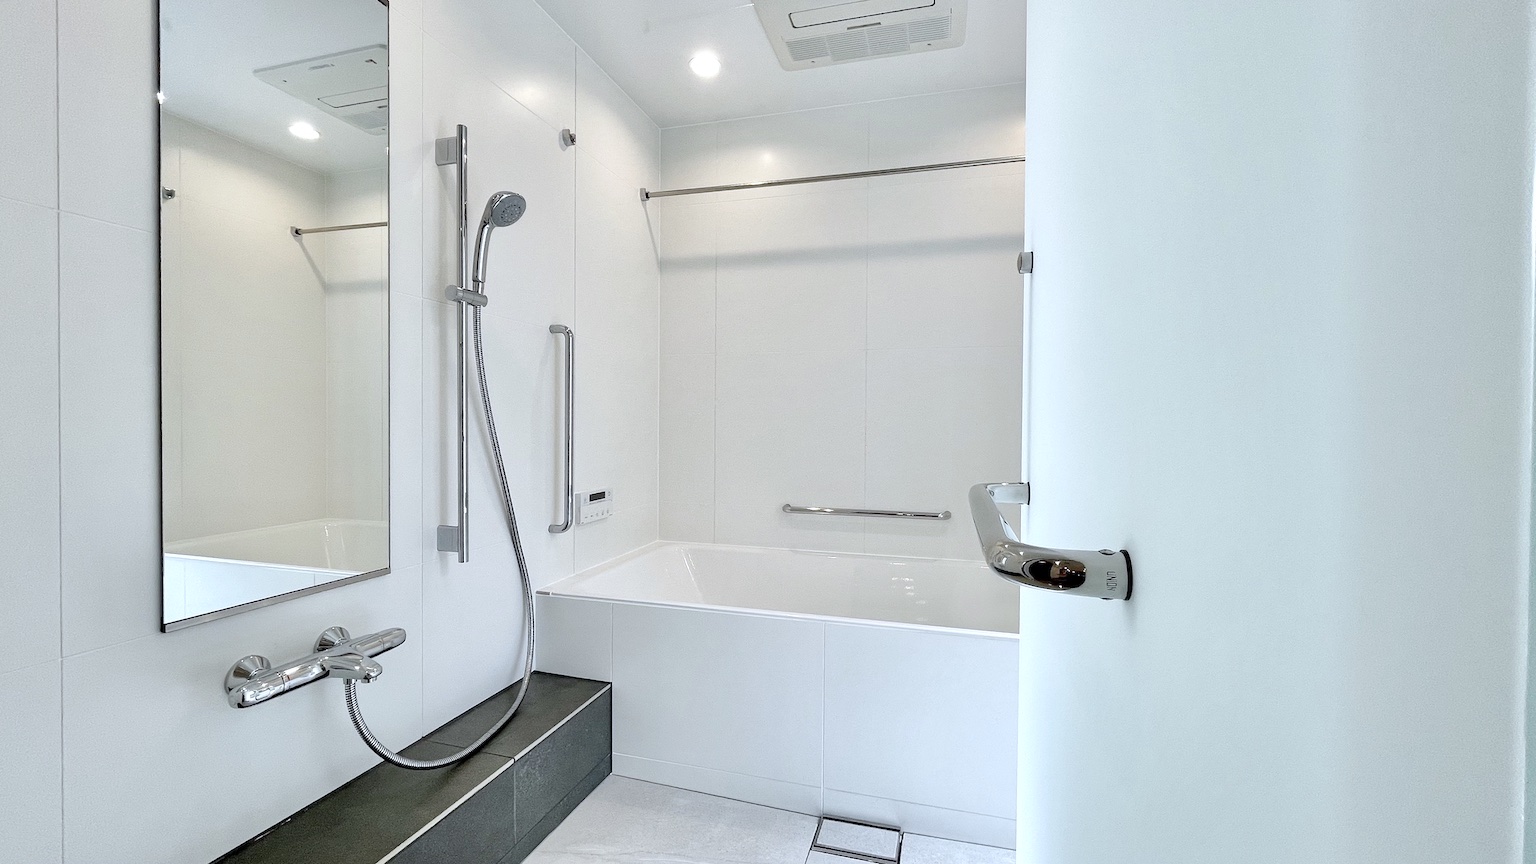 Izur The Bath 日本のバスルームをもっと素晴らしい空間にしたい